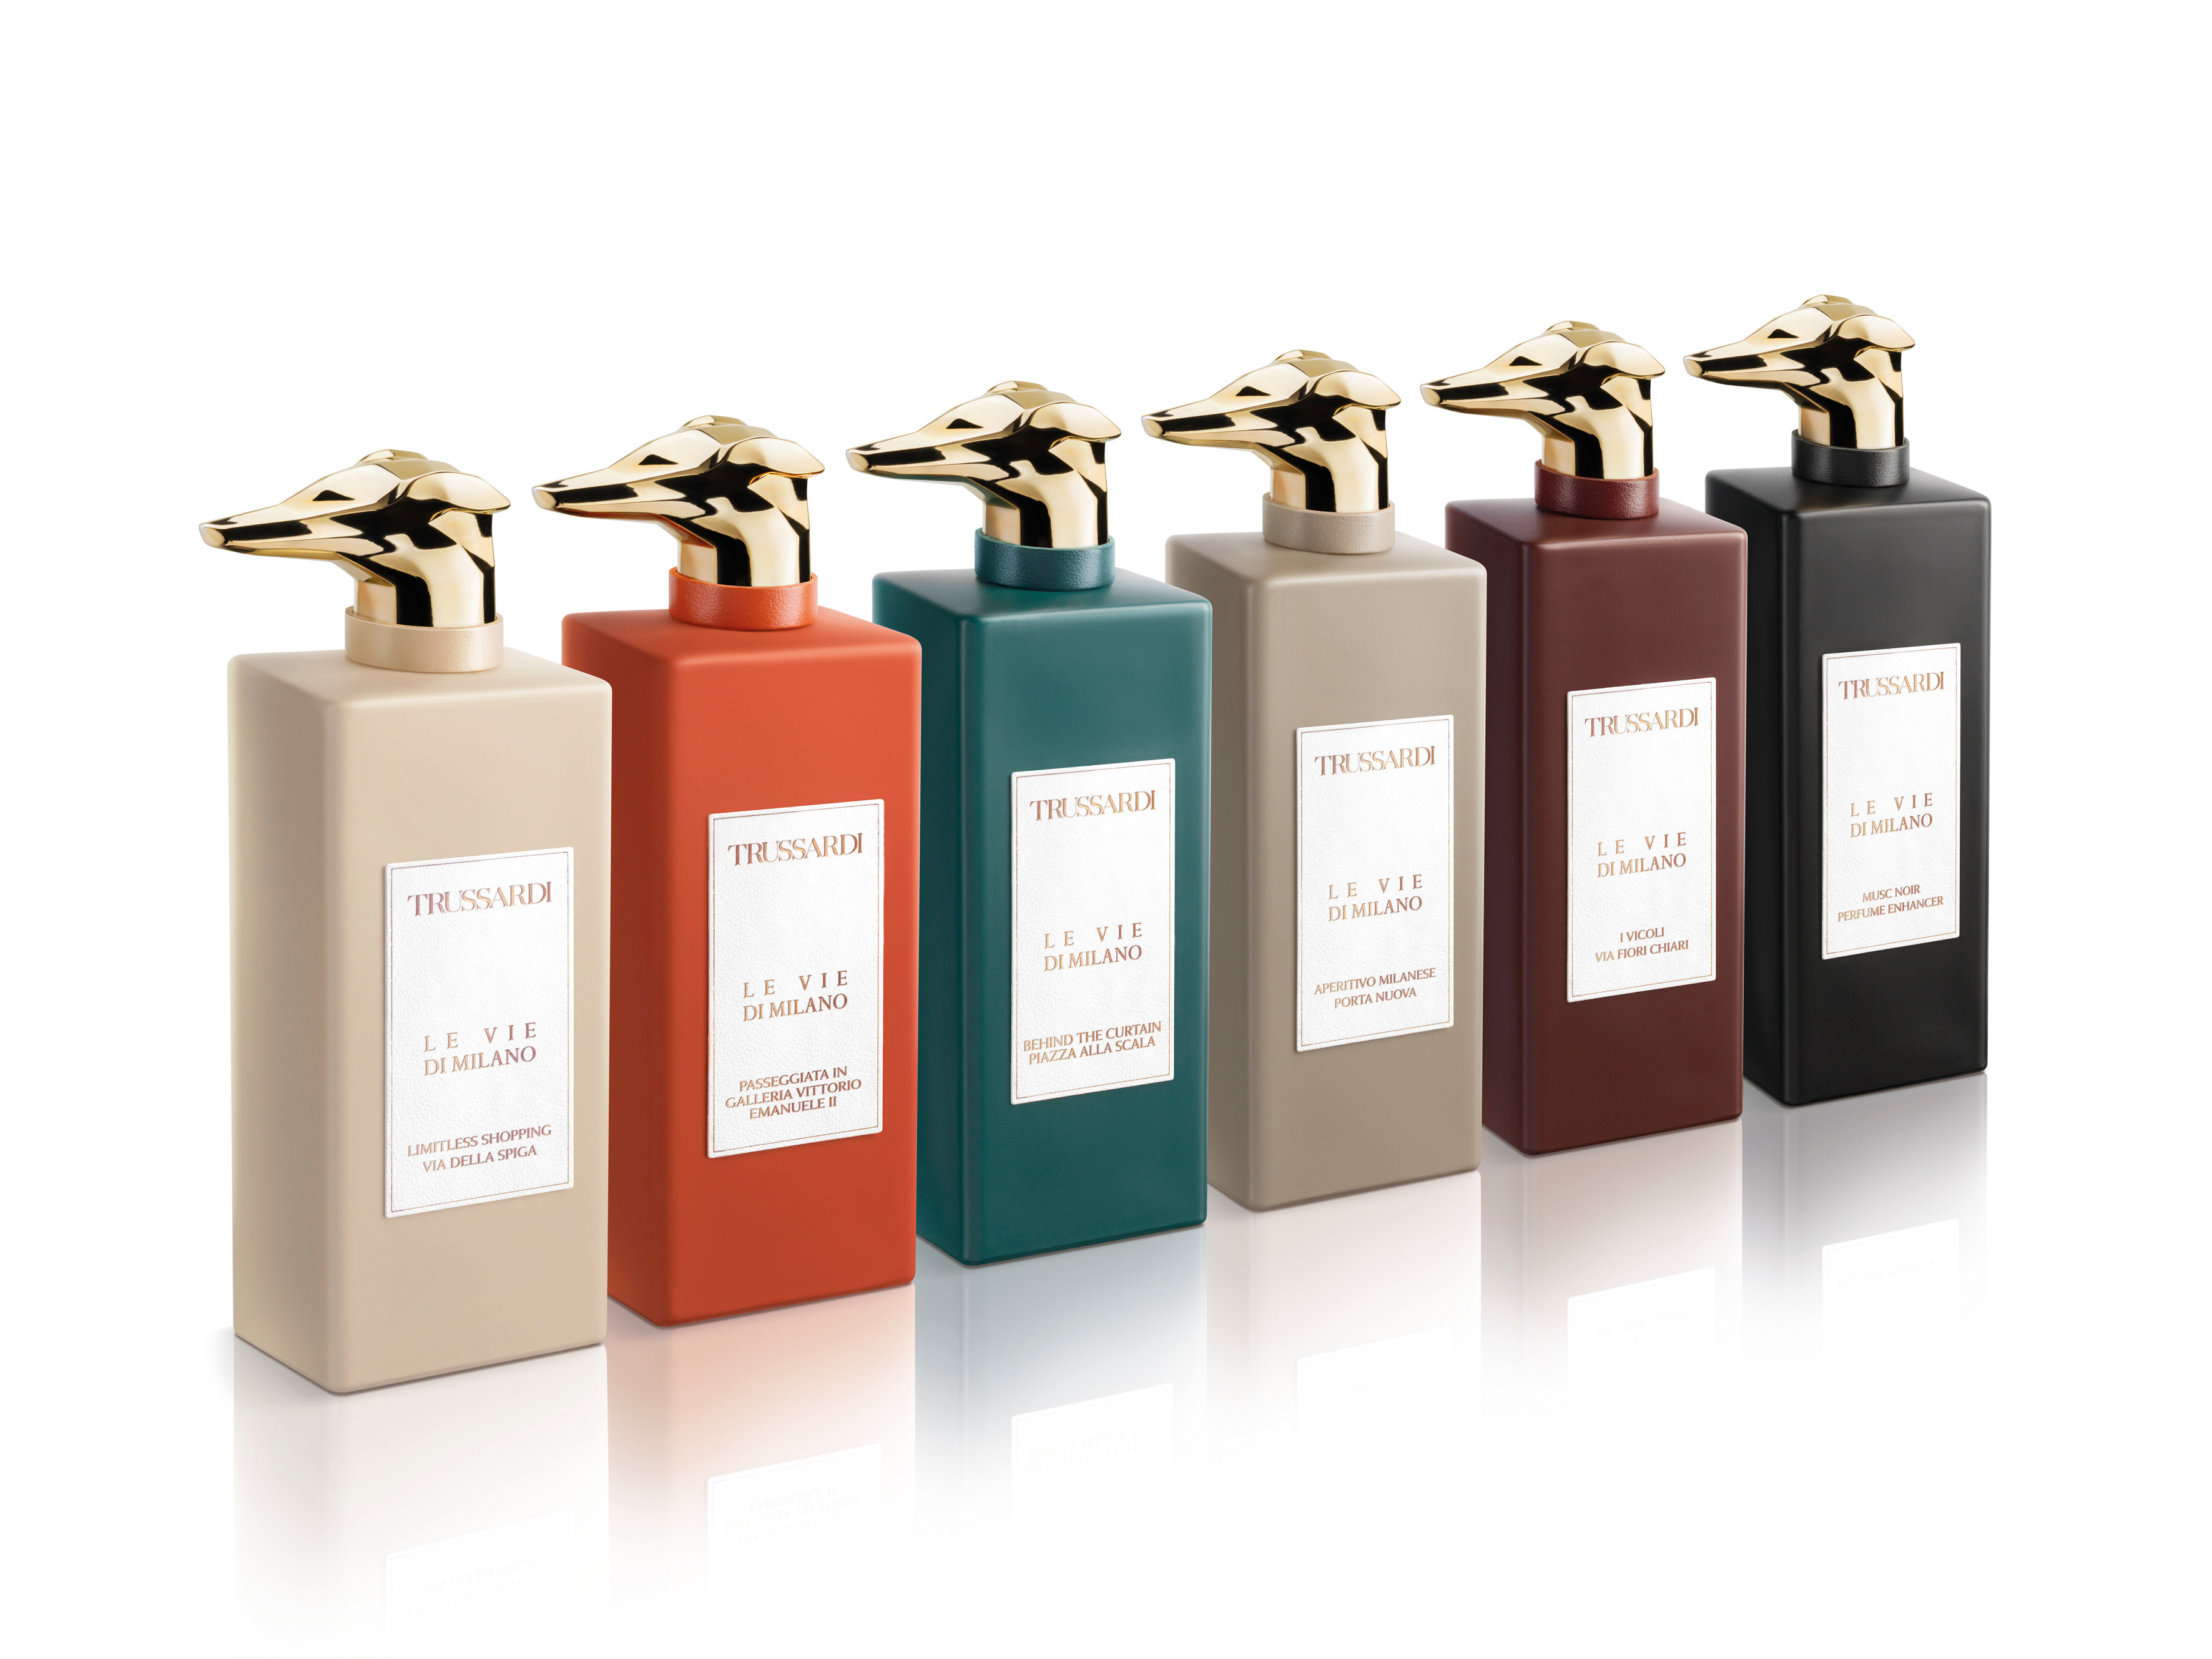 The Trussardi "Le Vie di Milano" collection of fragrances.